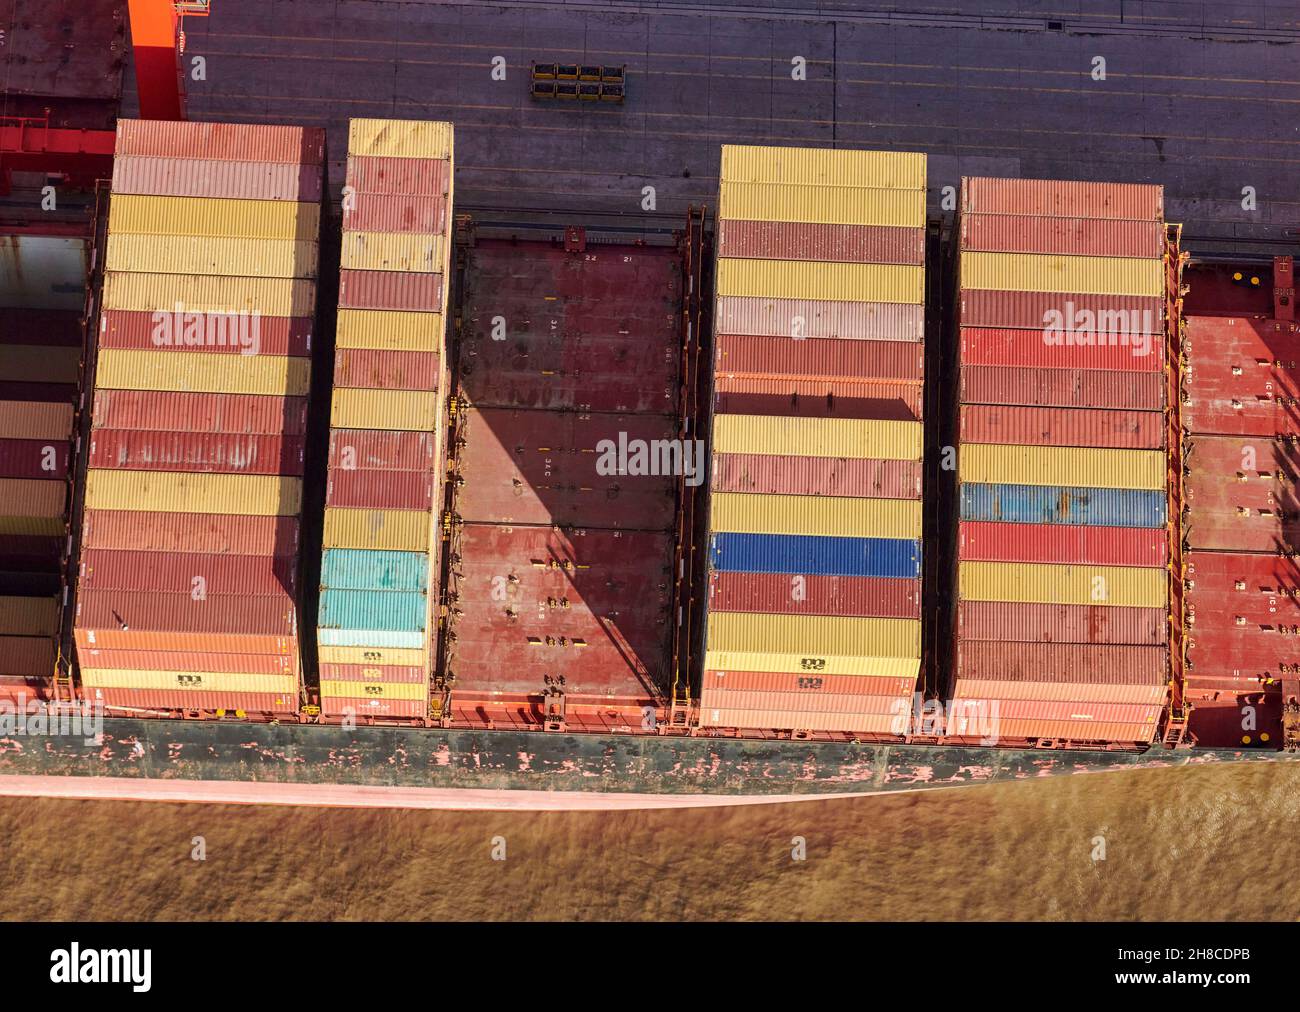 Una vista aérea de los contenedores sobre el envío, River Mersey, Liverpool Docks, North West England, Reino Unido Foto de stock